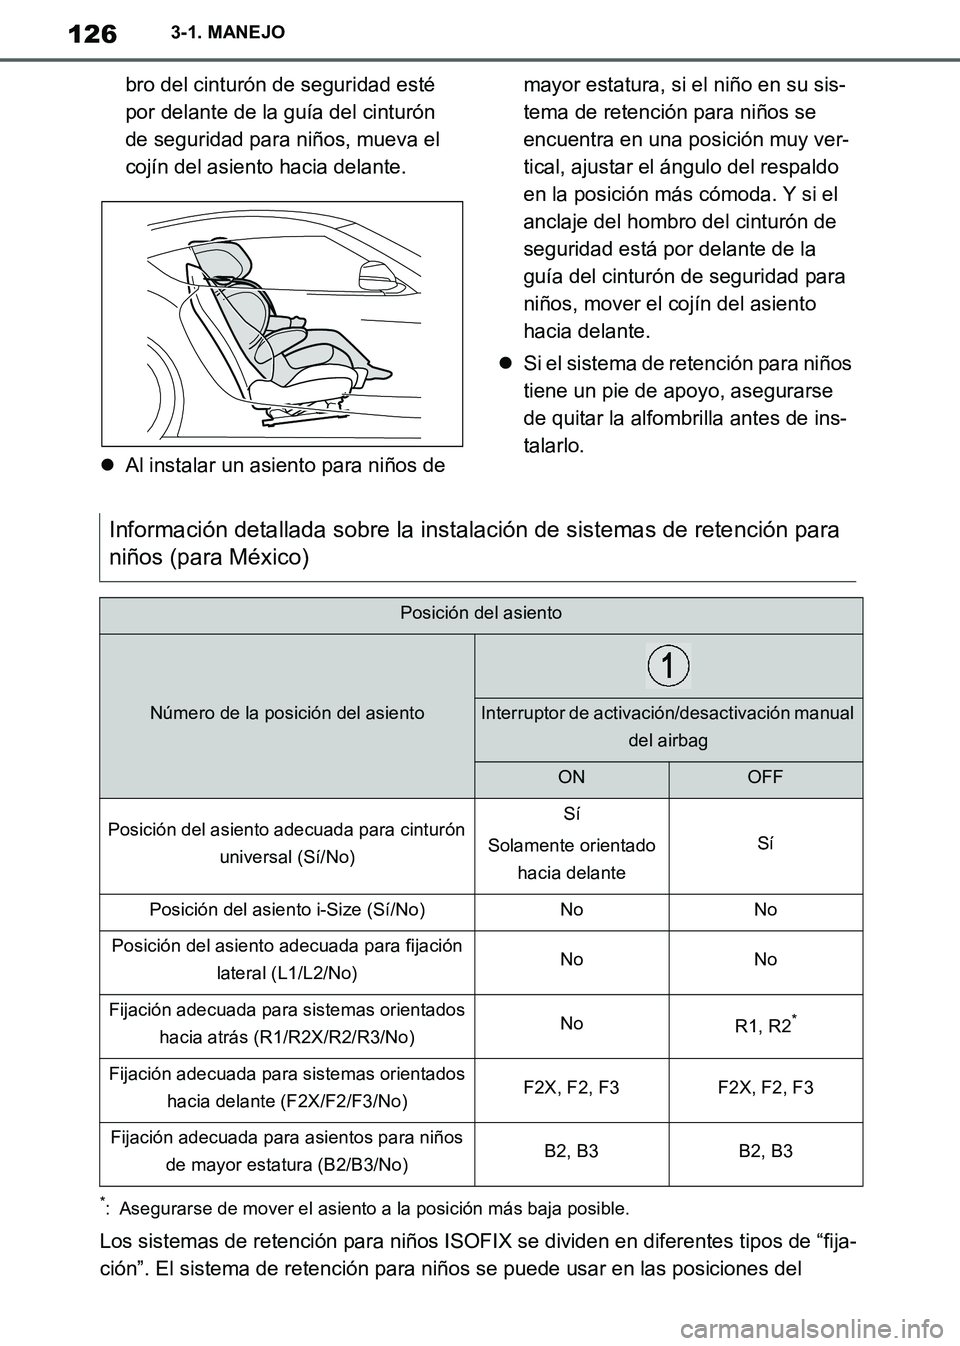 TOYOTA SUPRA 2019  Manuale de Empleo (in Spanish) 126
Supra Owners Manual_ES
3-1. MANEJO
bro del cinturón de seguridad esté 
por delante de la guía del cinturón 
de seguridad para niños, mueva el 
cojín del asiento hacia delante.
Al instala